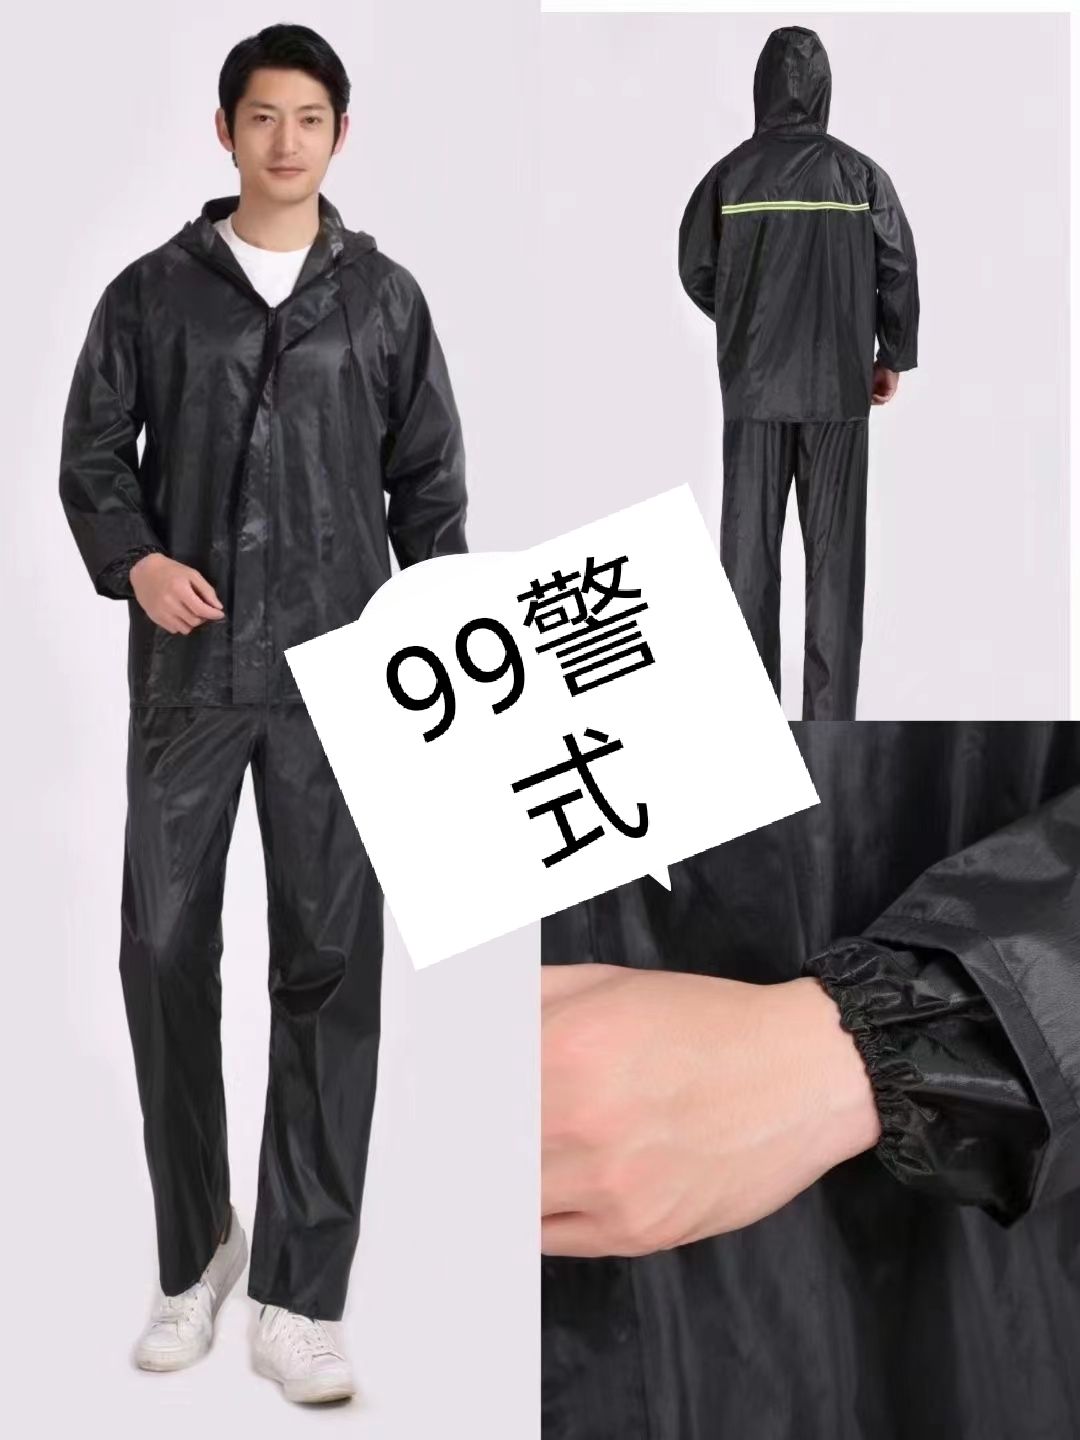 99警式雨衣套装